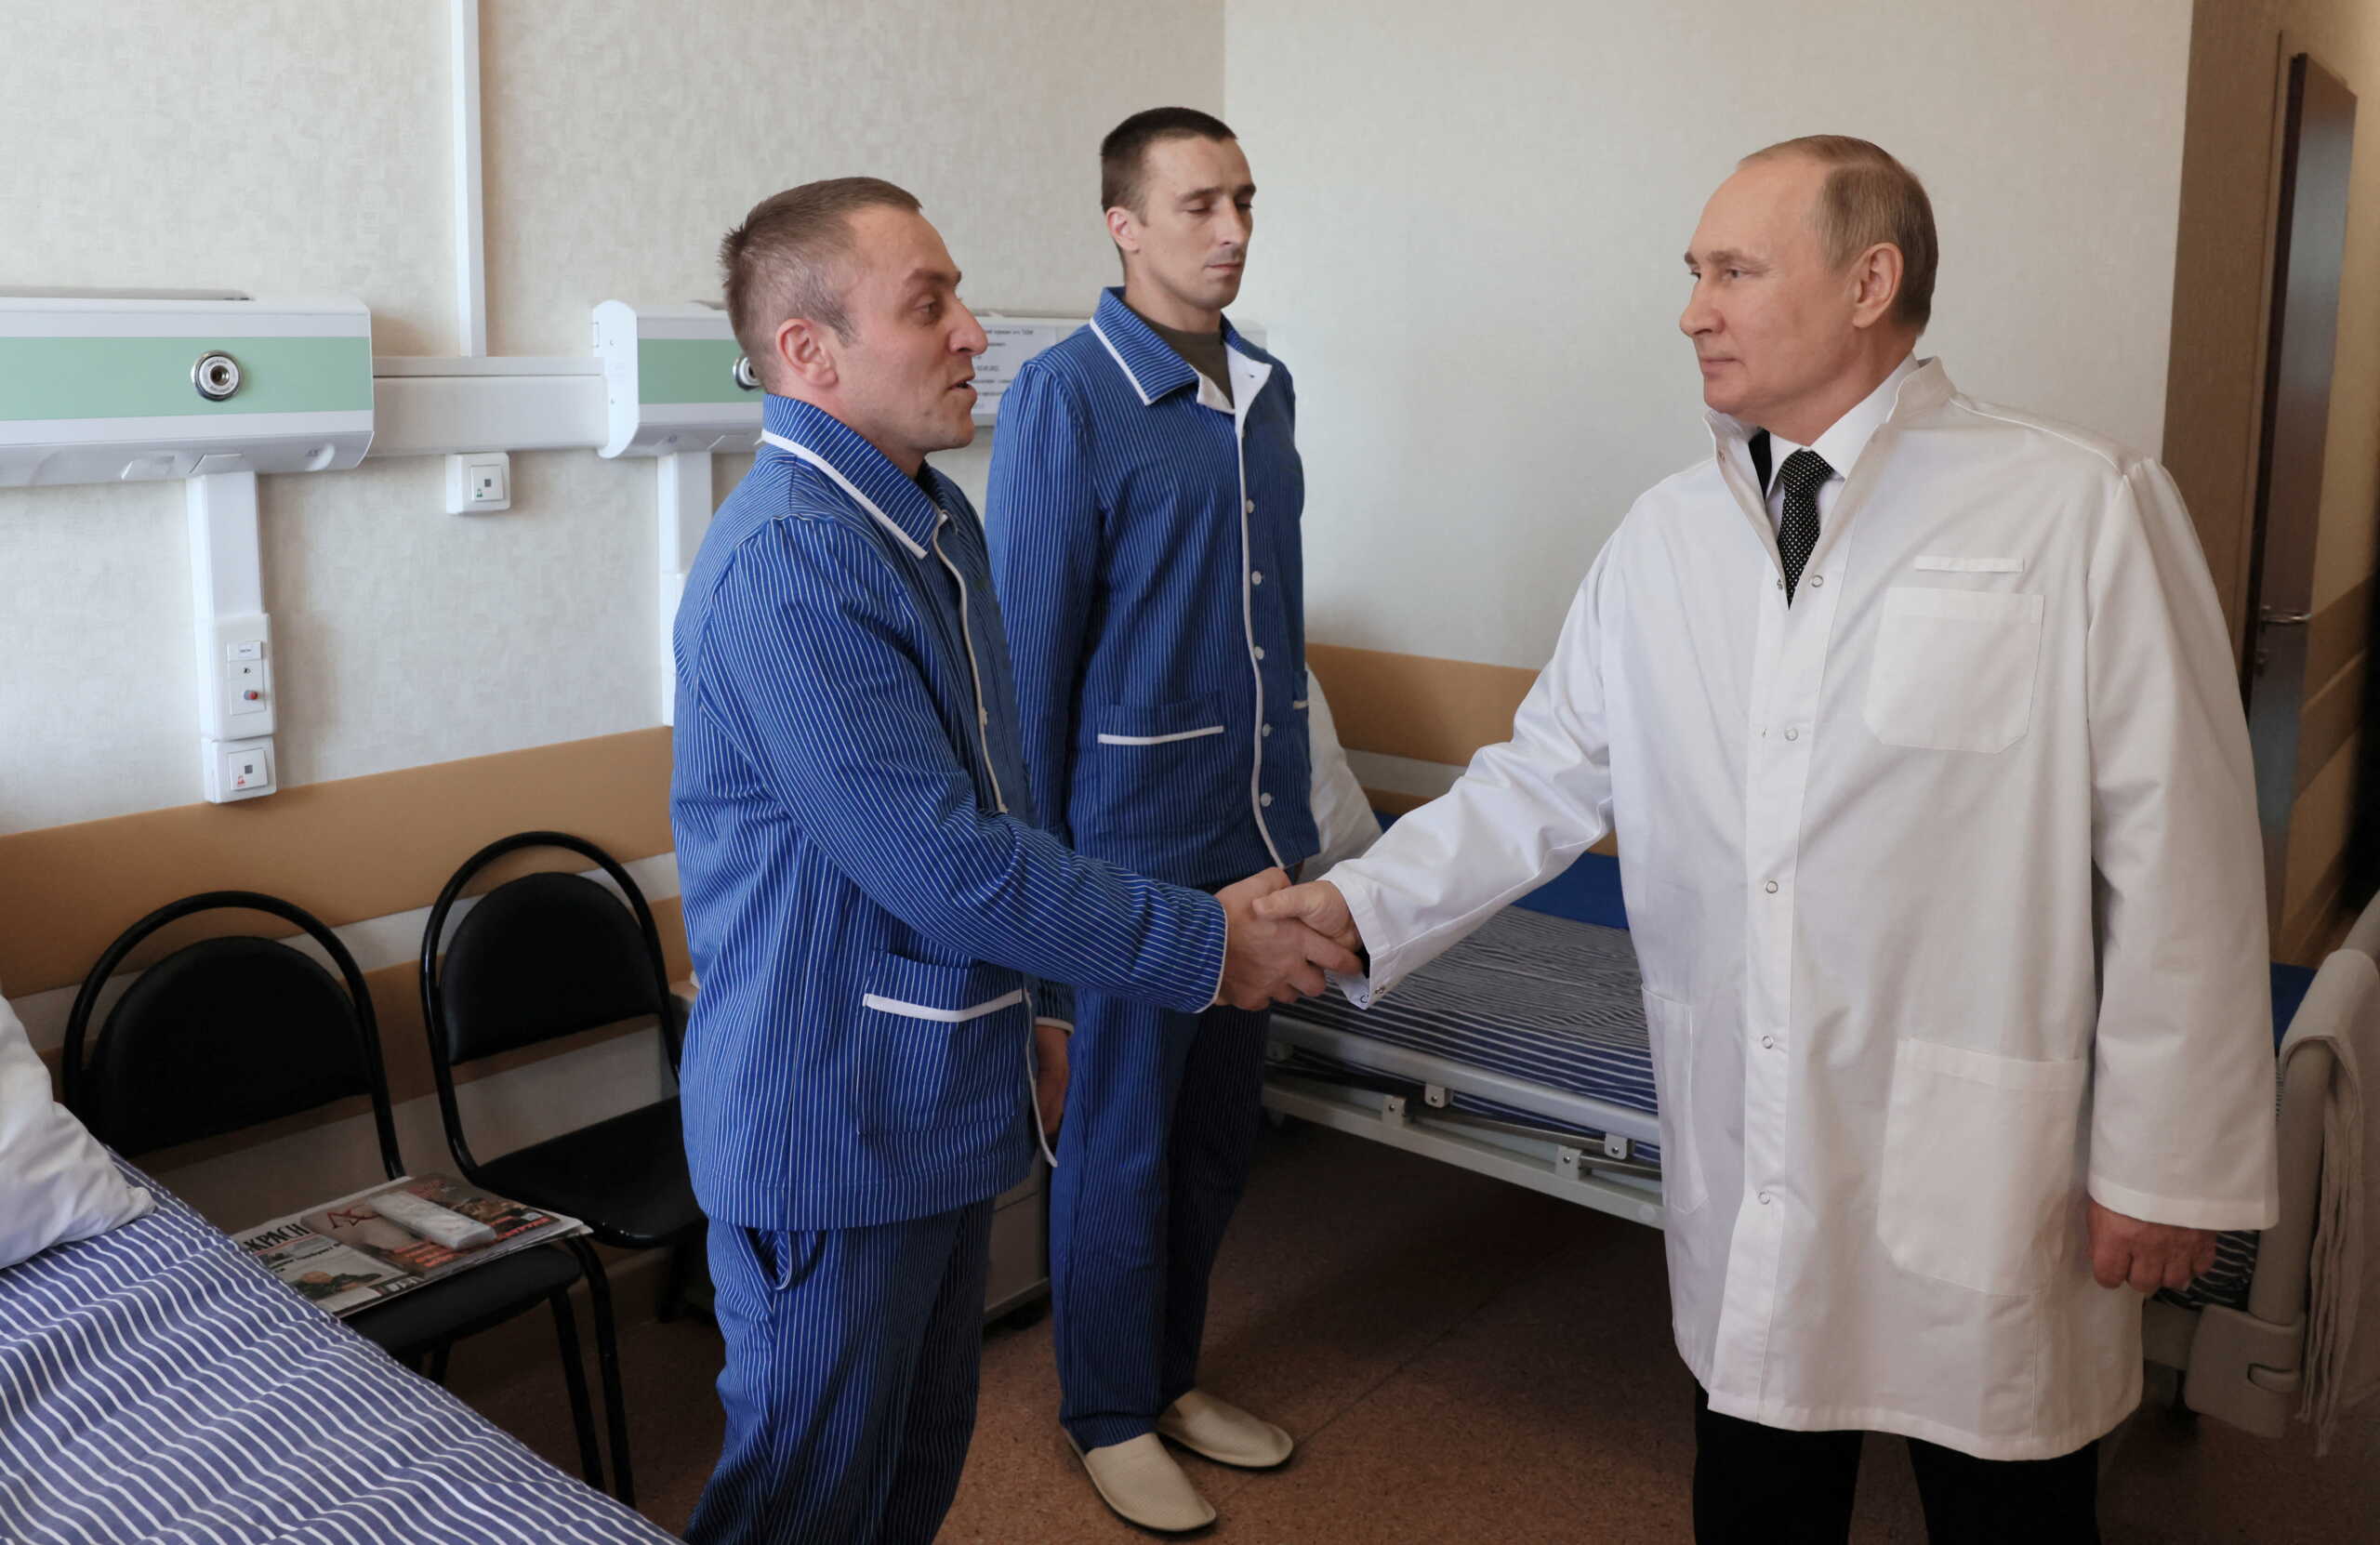 Ρωσία: Στρατιώτες που τραυματίστηκαν στον πόλεμο επισκέφθηκε ο Βλαντιμίρ Πούτιν